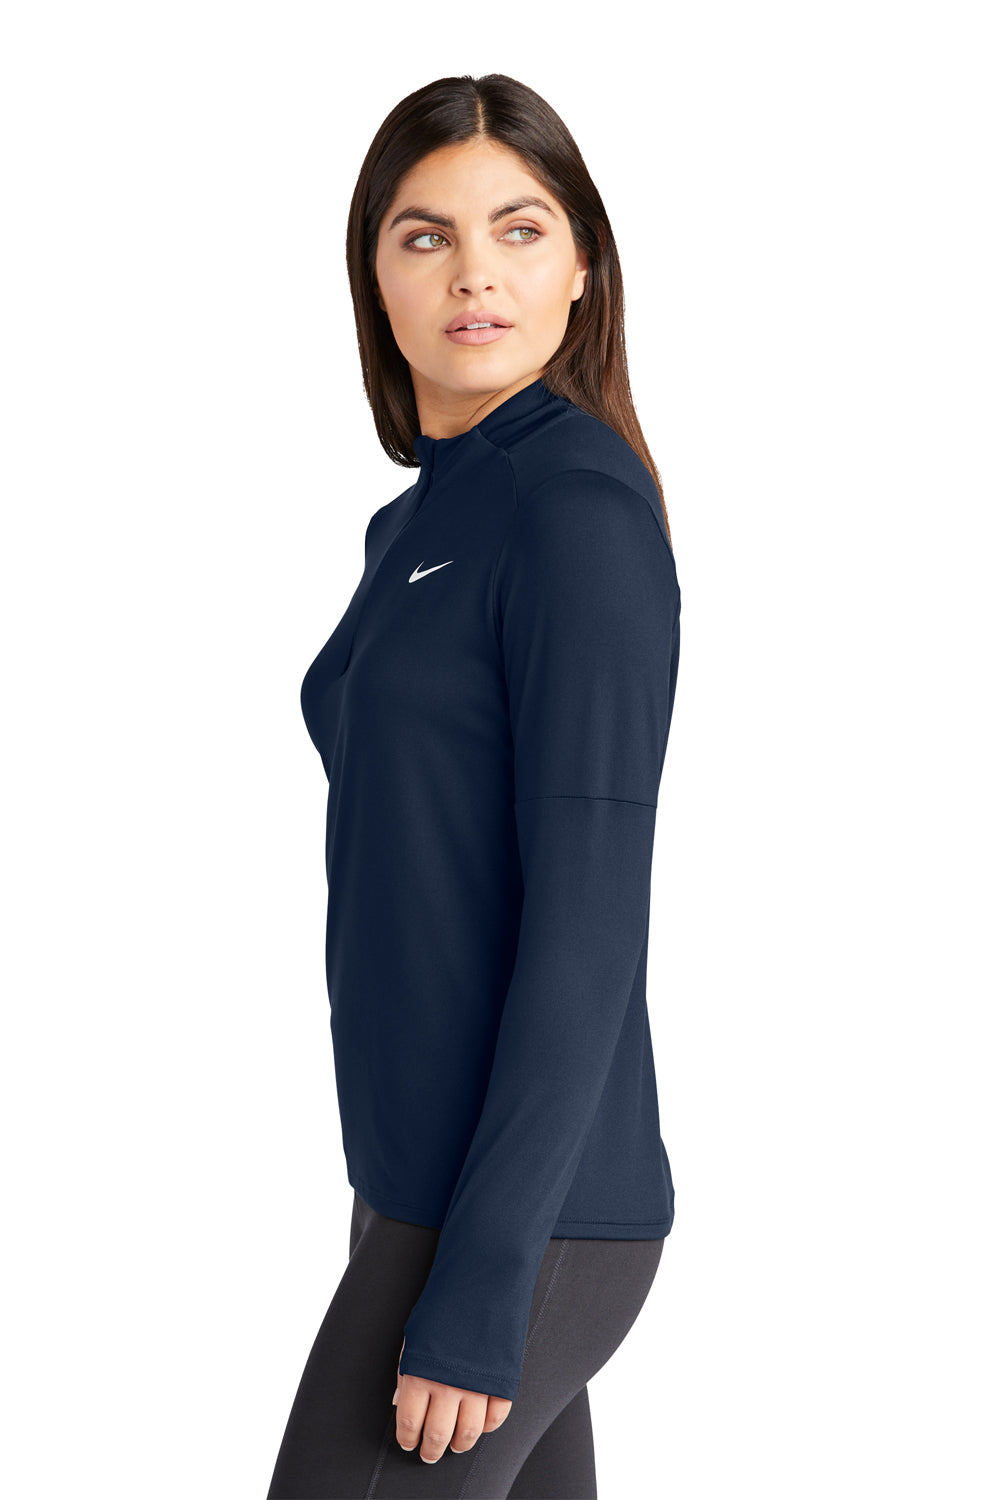 Nike NKDH4951 Womens Element Dri-Fit Moisture Wicking 1/4 Zip Sweatshirt Navy Blue Model Side